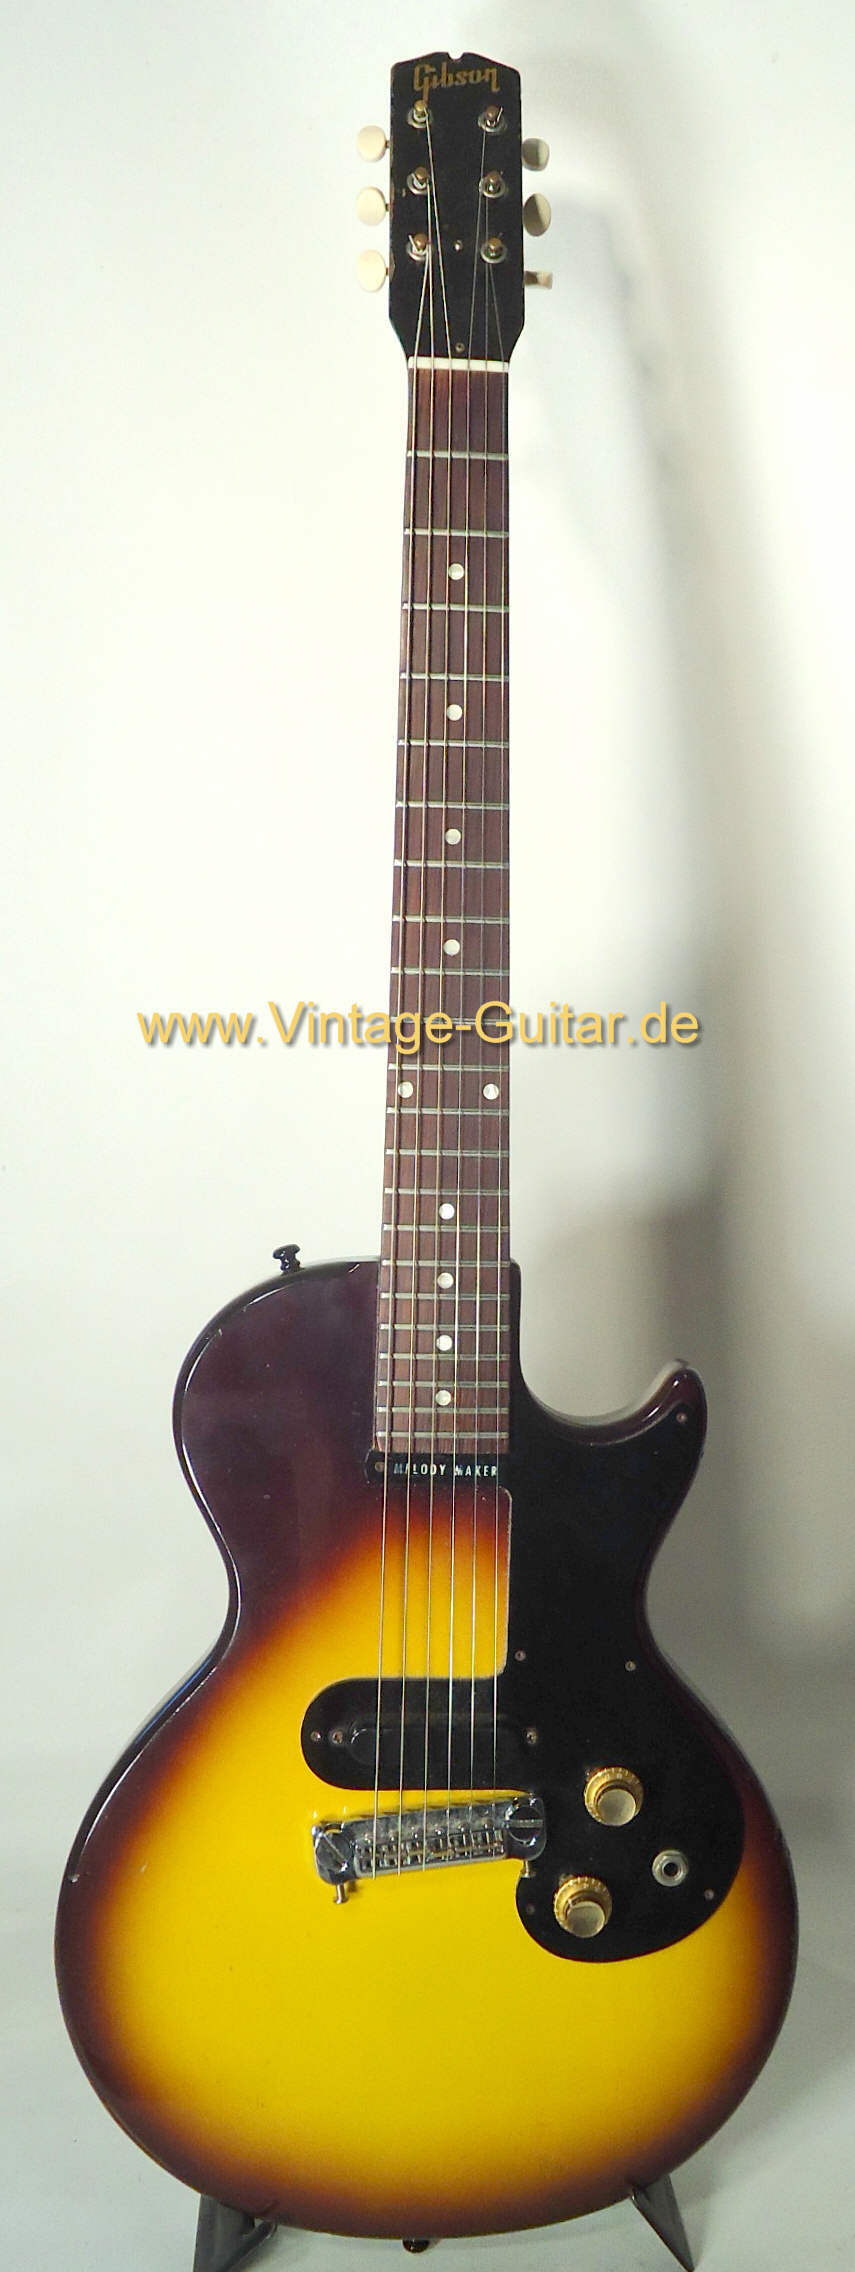 Gibson Melody Maker 1960 a.jpg